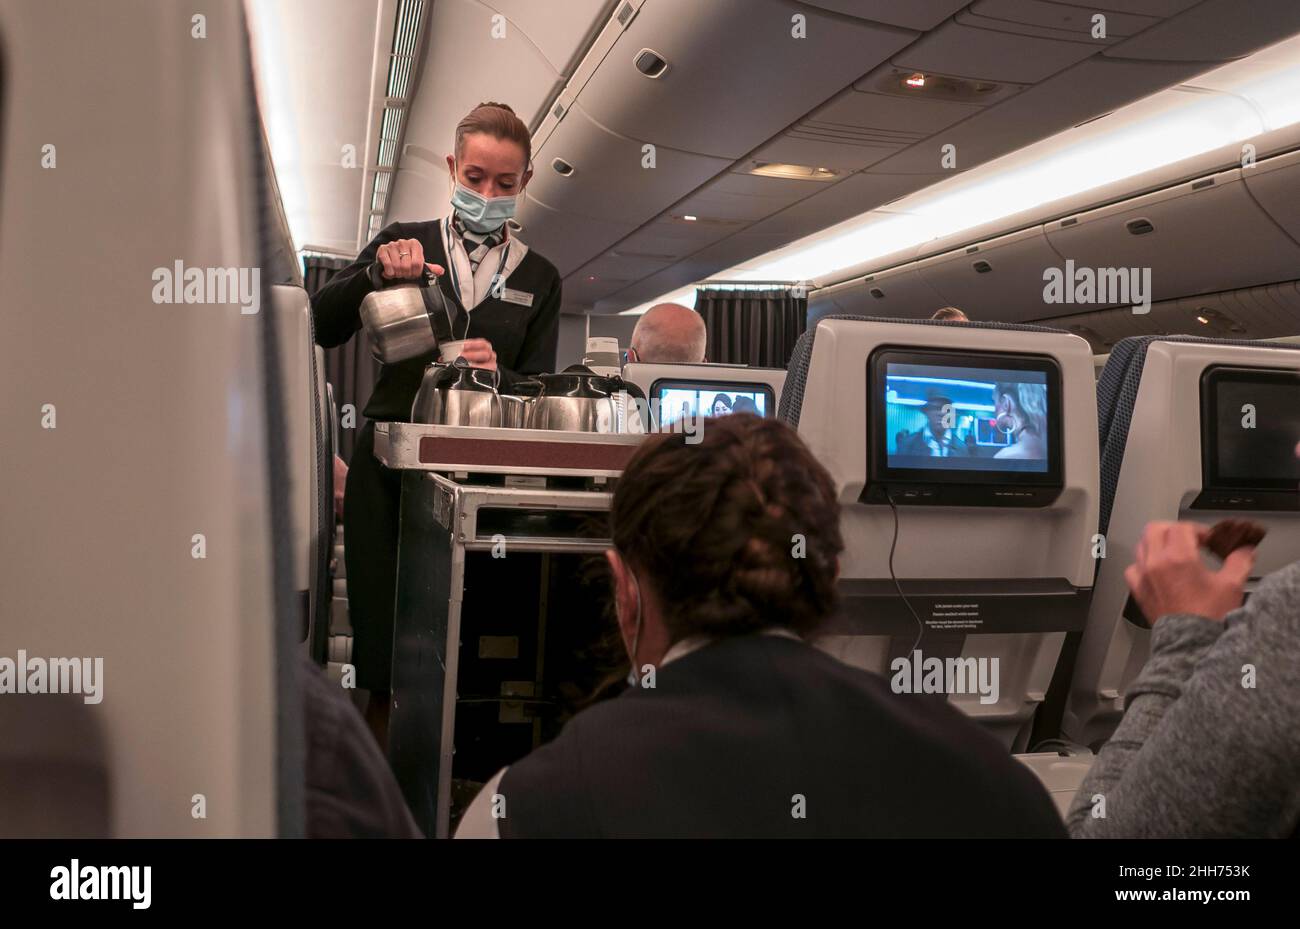 Azafata con máscara facial Covid que sirve a los clientes en el avión. Foto de stock